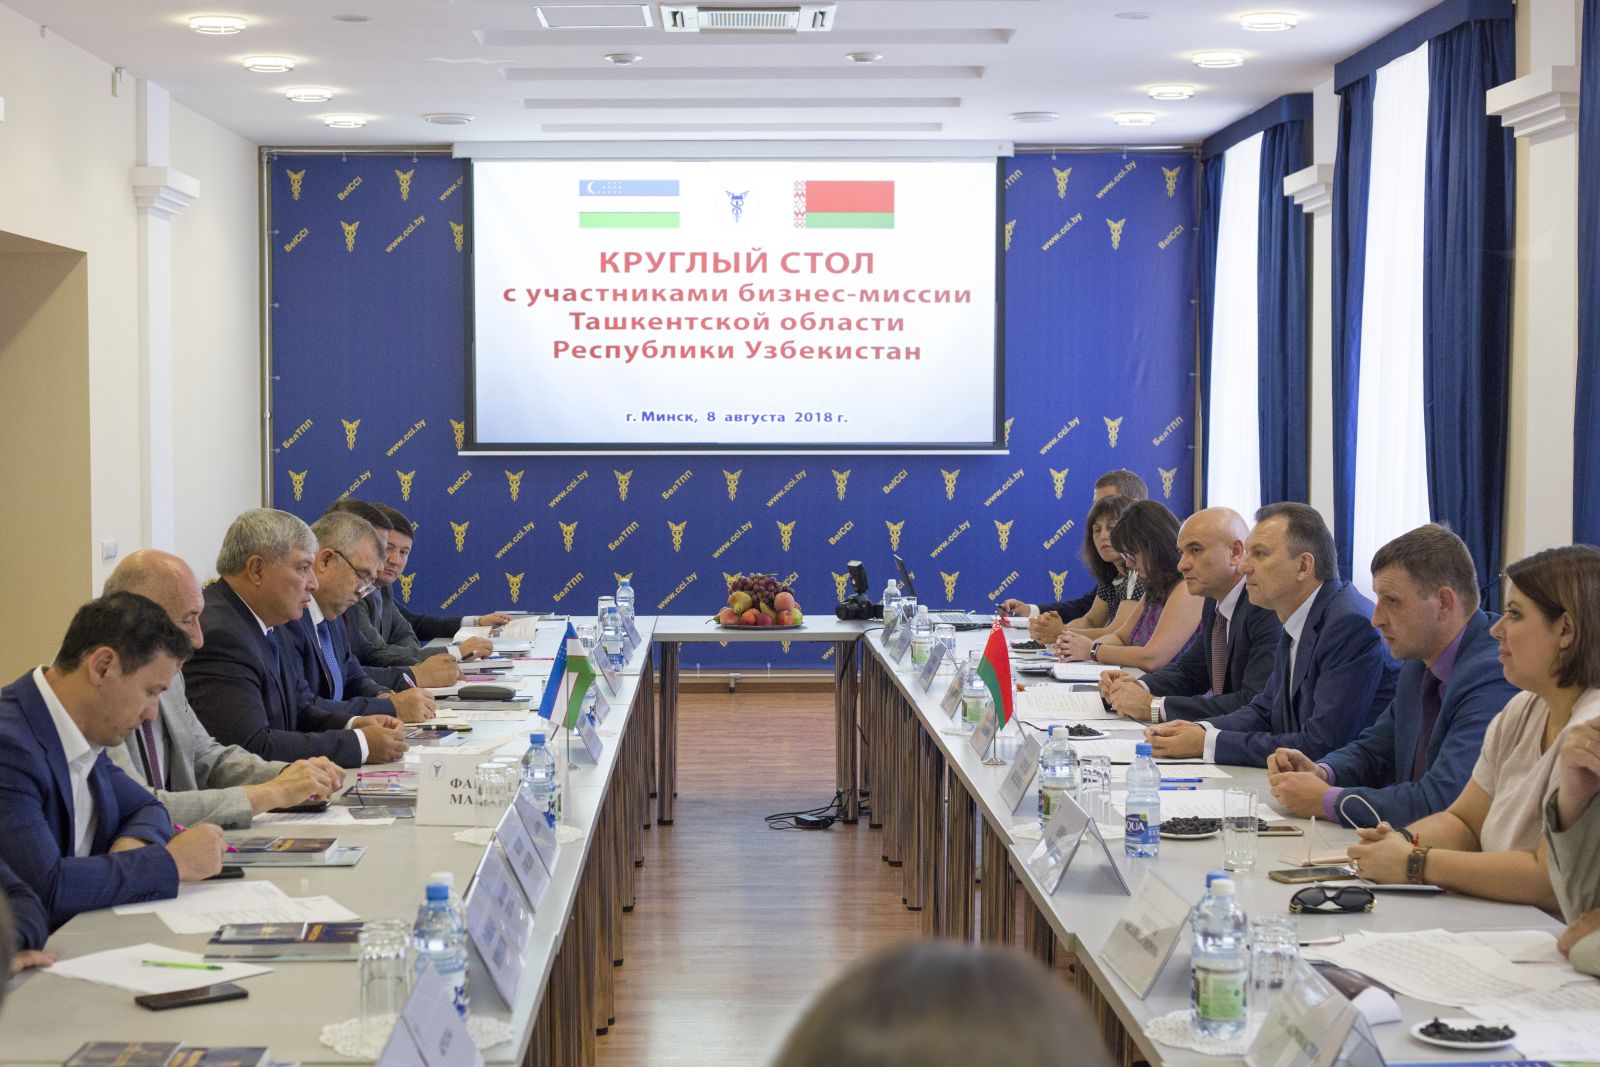 Круглый стол с участием представителей бизнес-кругов Беларуси и Ташкентской области Узбекистана